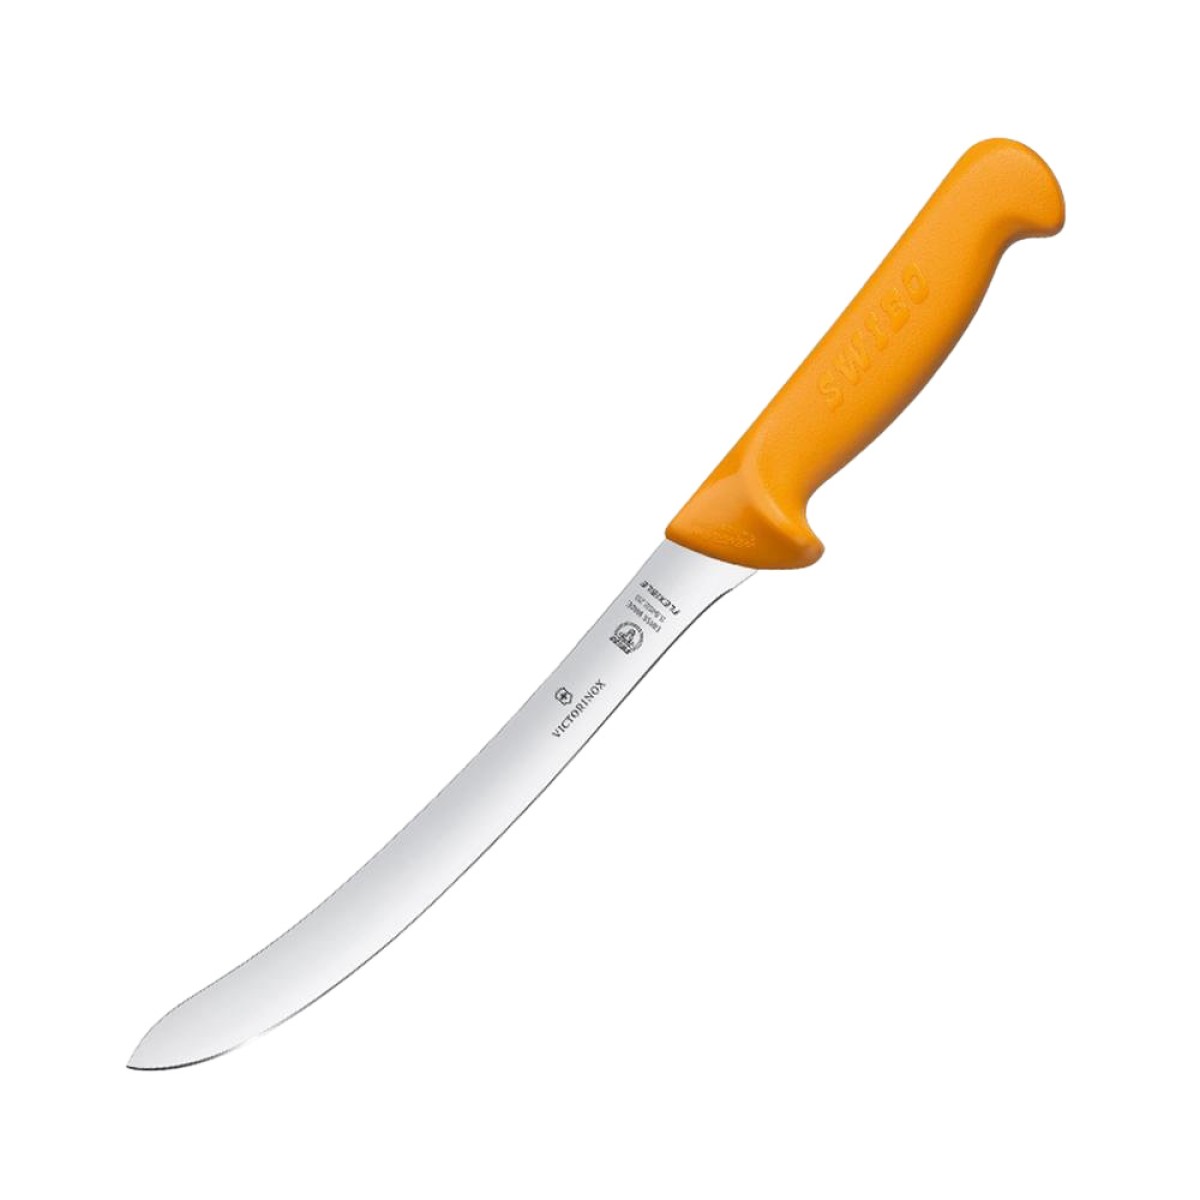 KNIFE SWIBO FILLETING CURVED FLEX 20CM